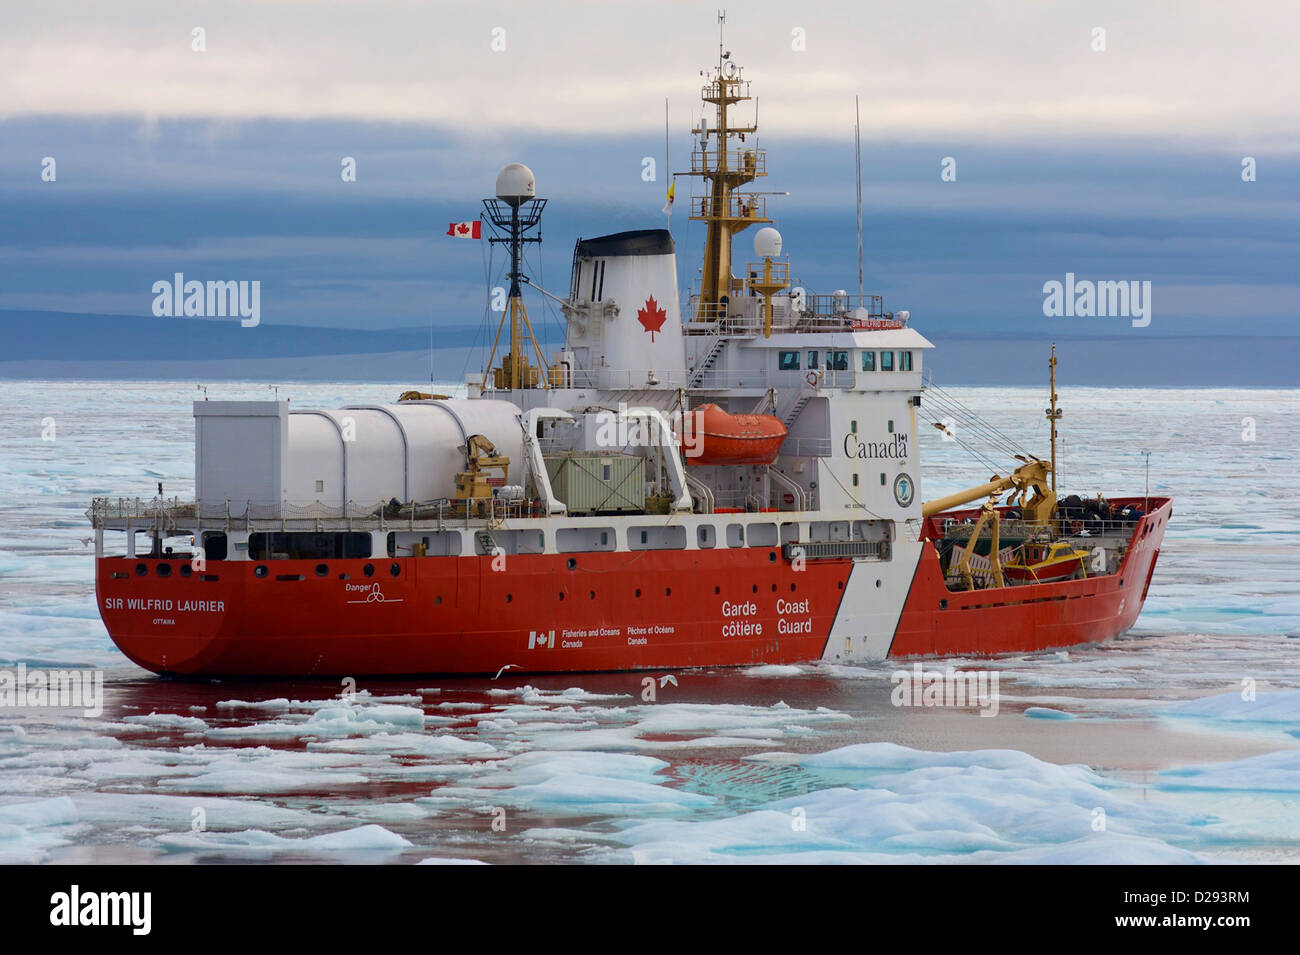 La Guardia Costiera canadese rompighiaccio, Sir Wilfred Laurier, passaggio a Nord Ovest, Nunavut, Canada Artico Foto Stock